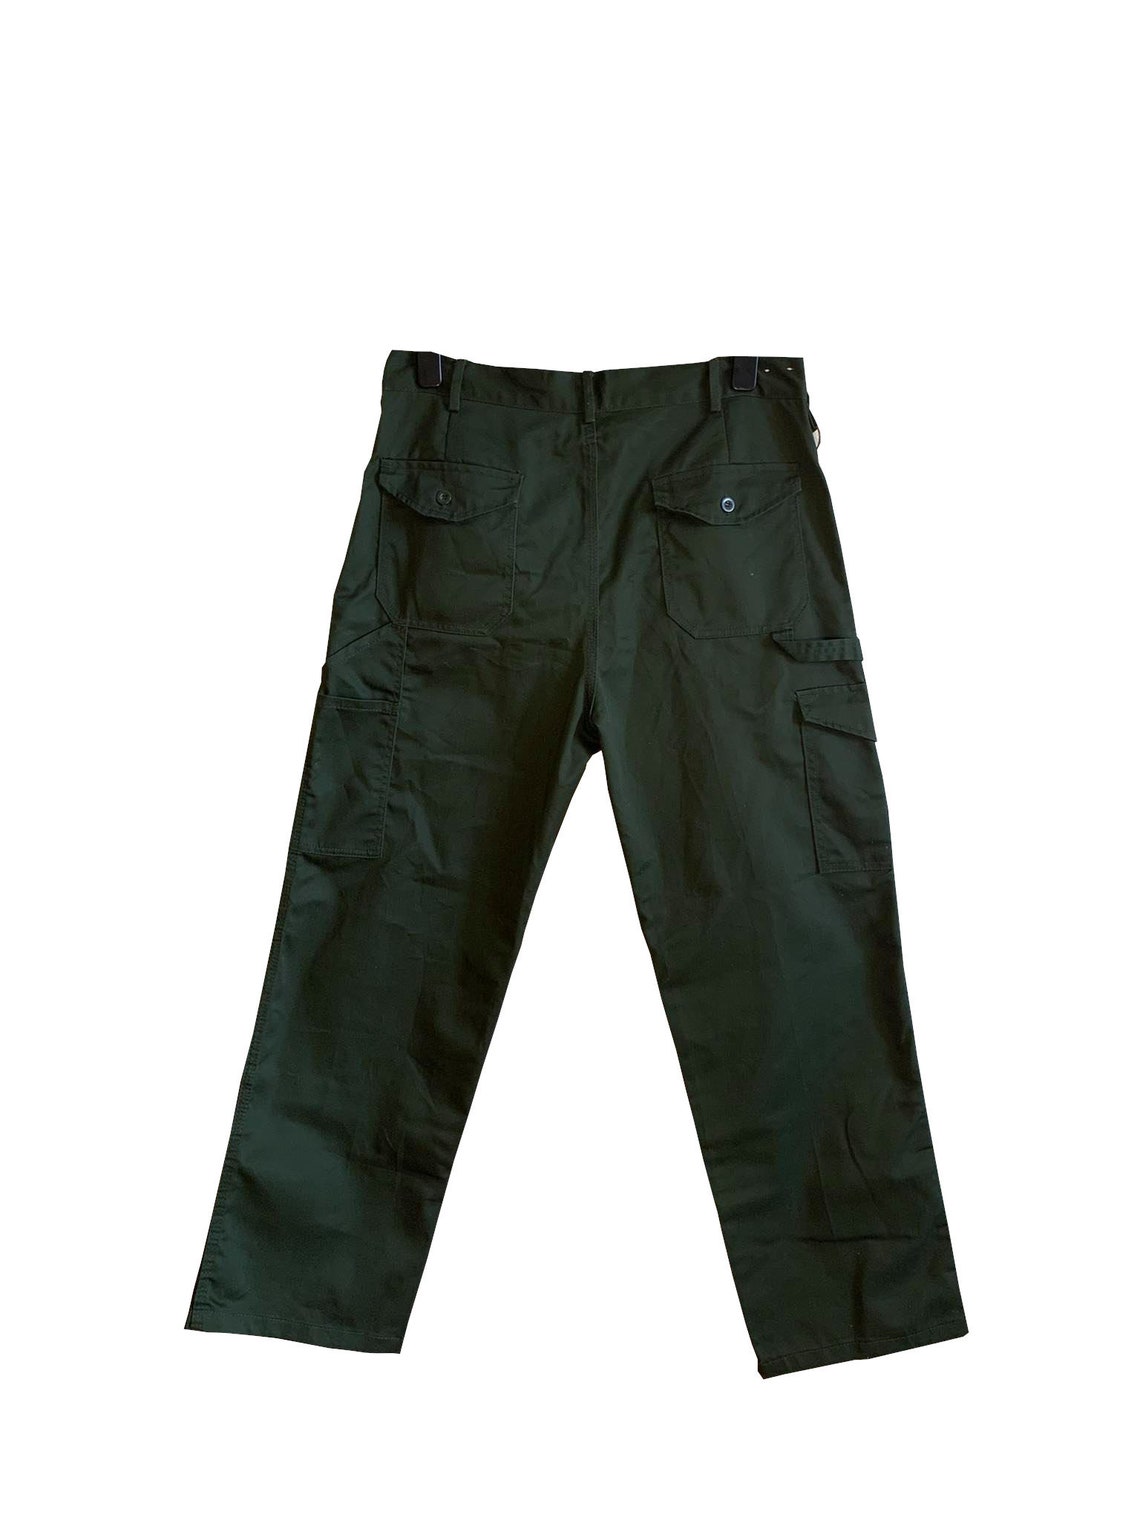 Dickies Cargo Trousers Vintage Dickies Dickies Pants | Etsy